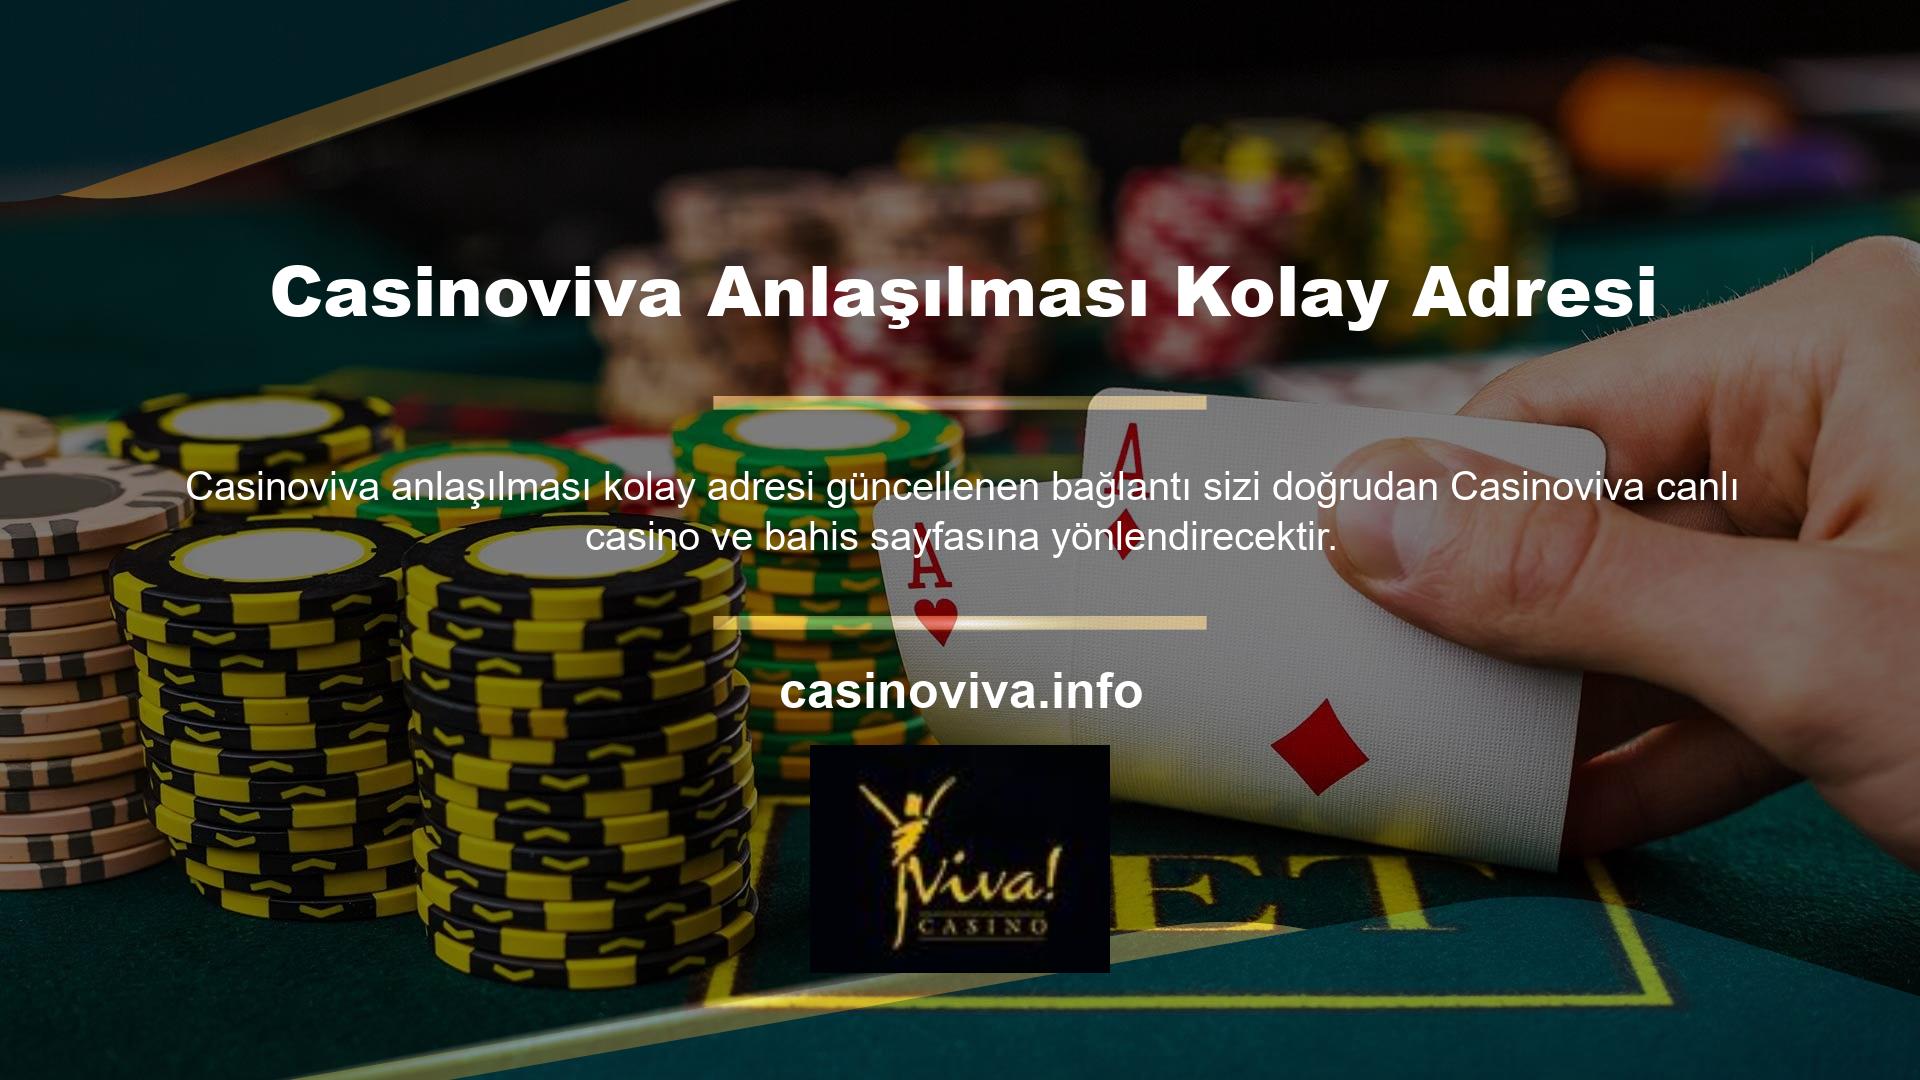 Casinoviva bir bahis sitesidir ve Türkiye'nin en popüler casino sitelerinden biridir